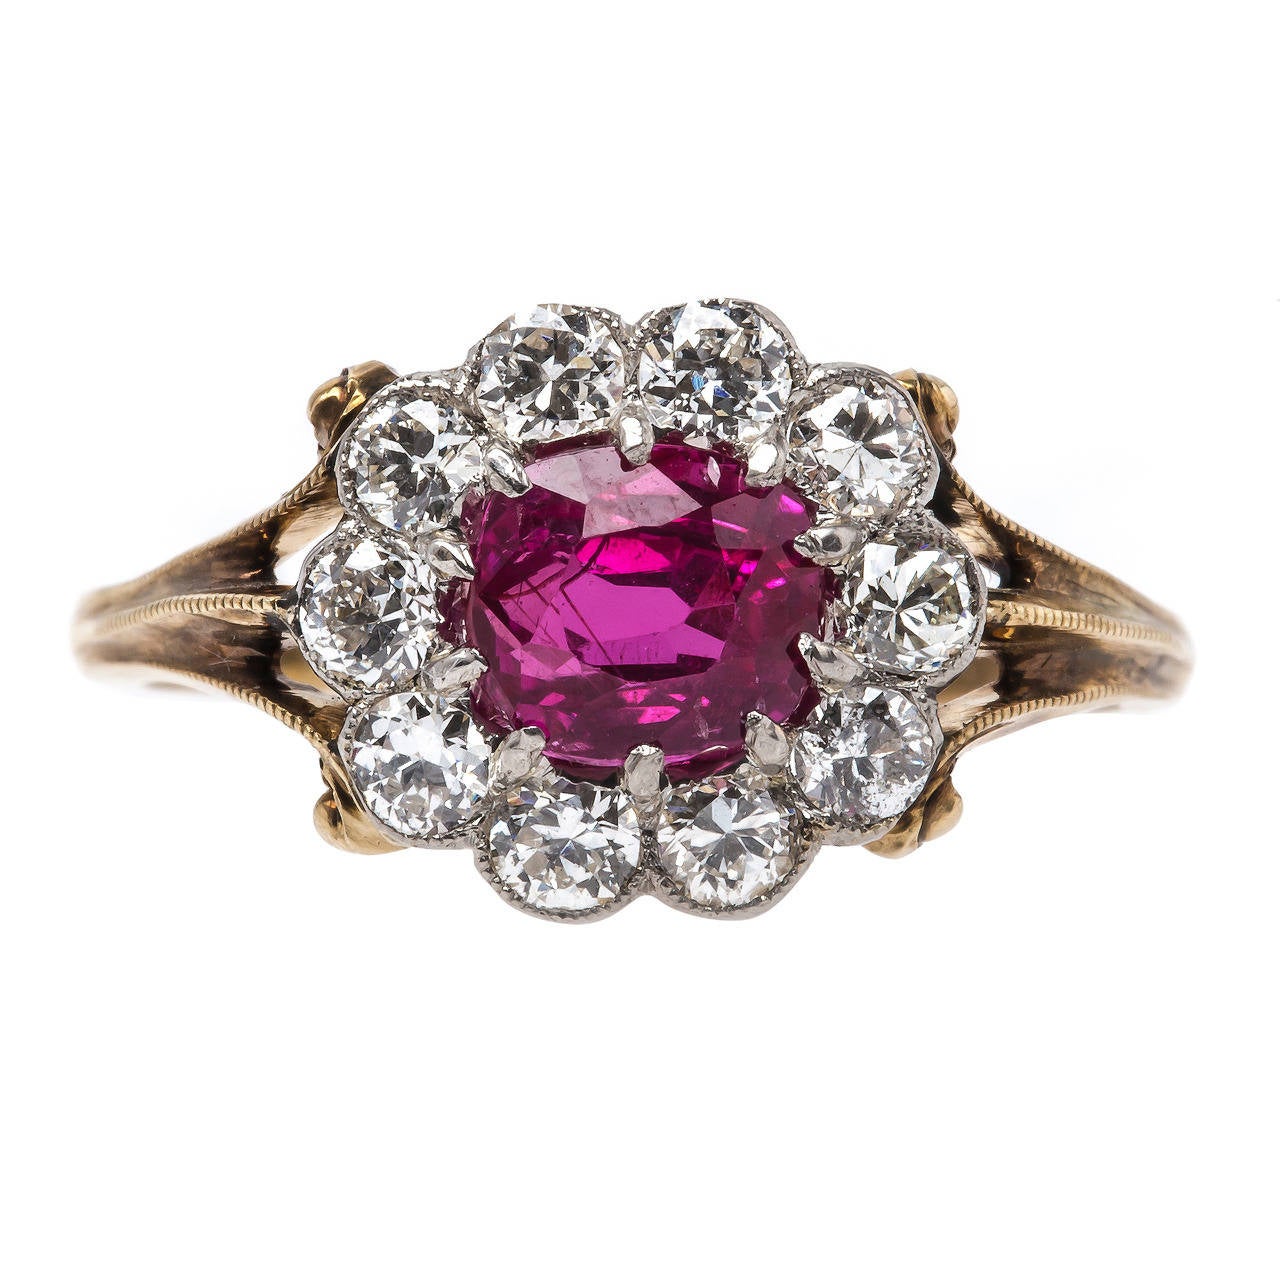 Spectacular Edwardian Era Ruby Diamond Gold Platinum Engagement Ring